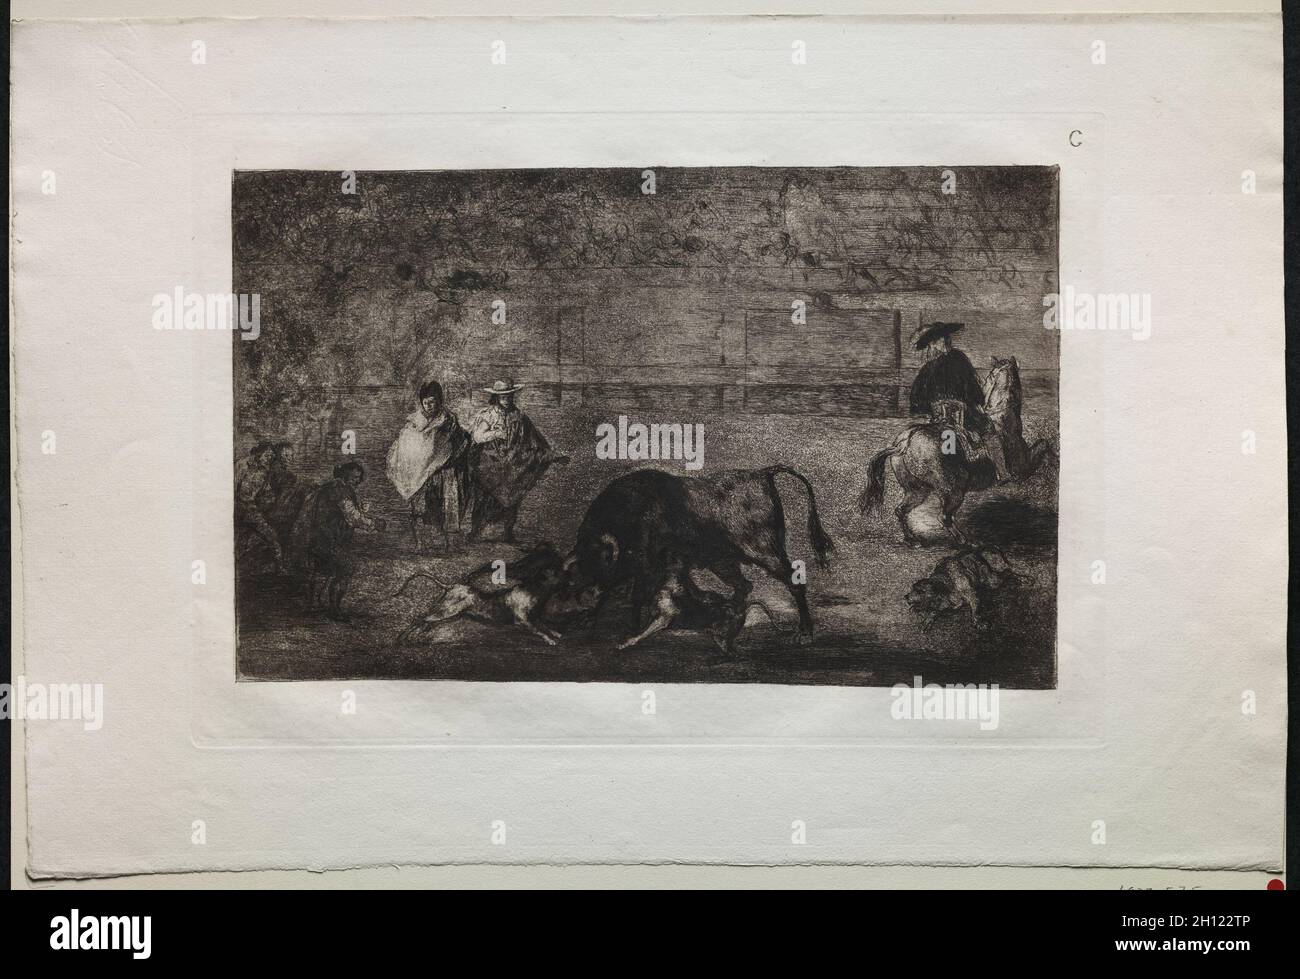 Bullfights: The Dog Let Loose on the Bull, 1816, gedruckt 1876. Francisco de Goya (Spanisch, 1746-1828). Gravur; Stockfoto